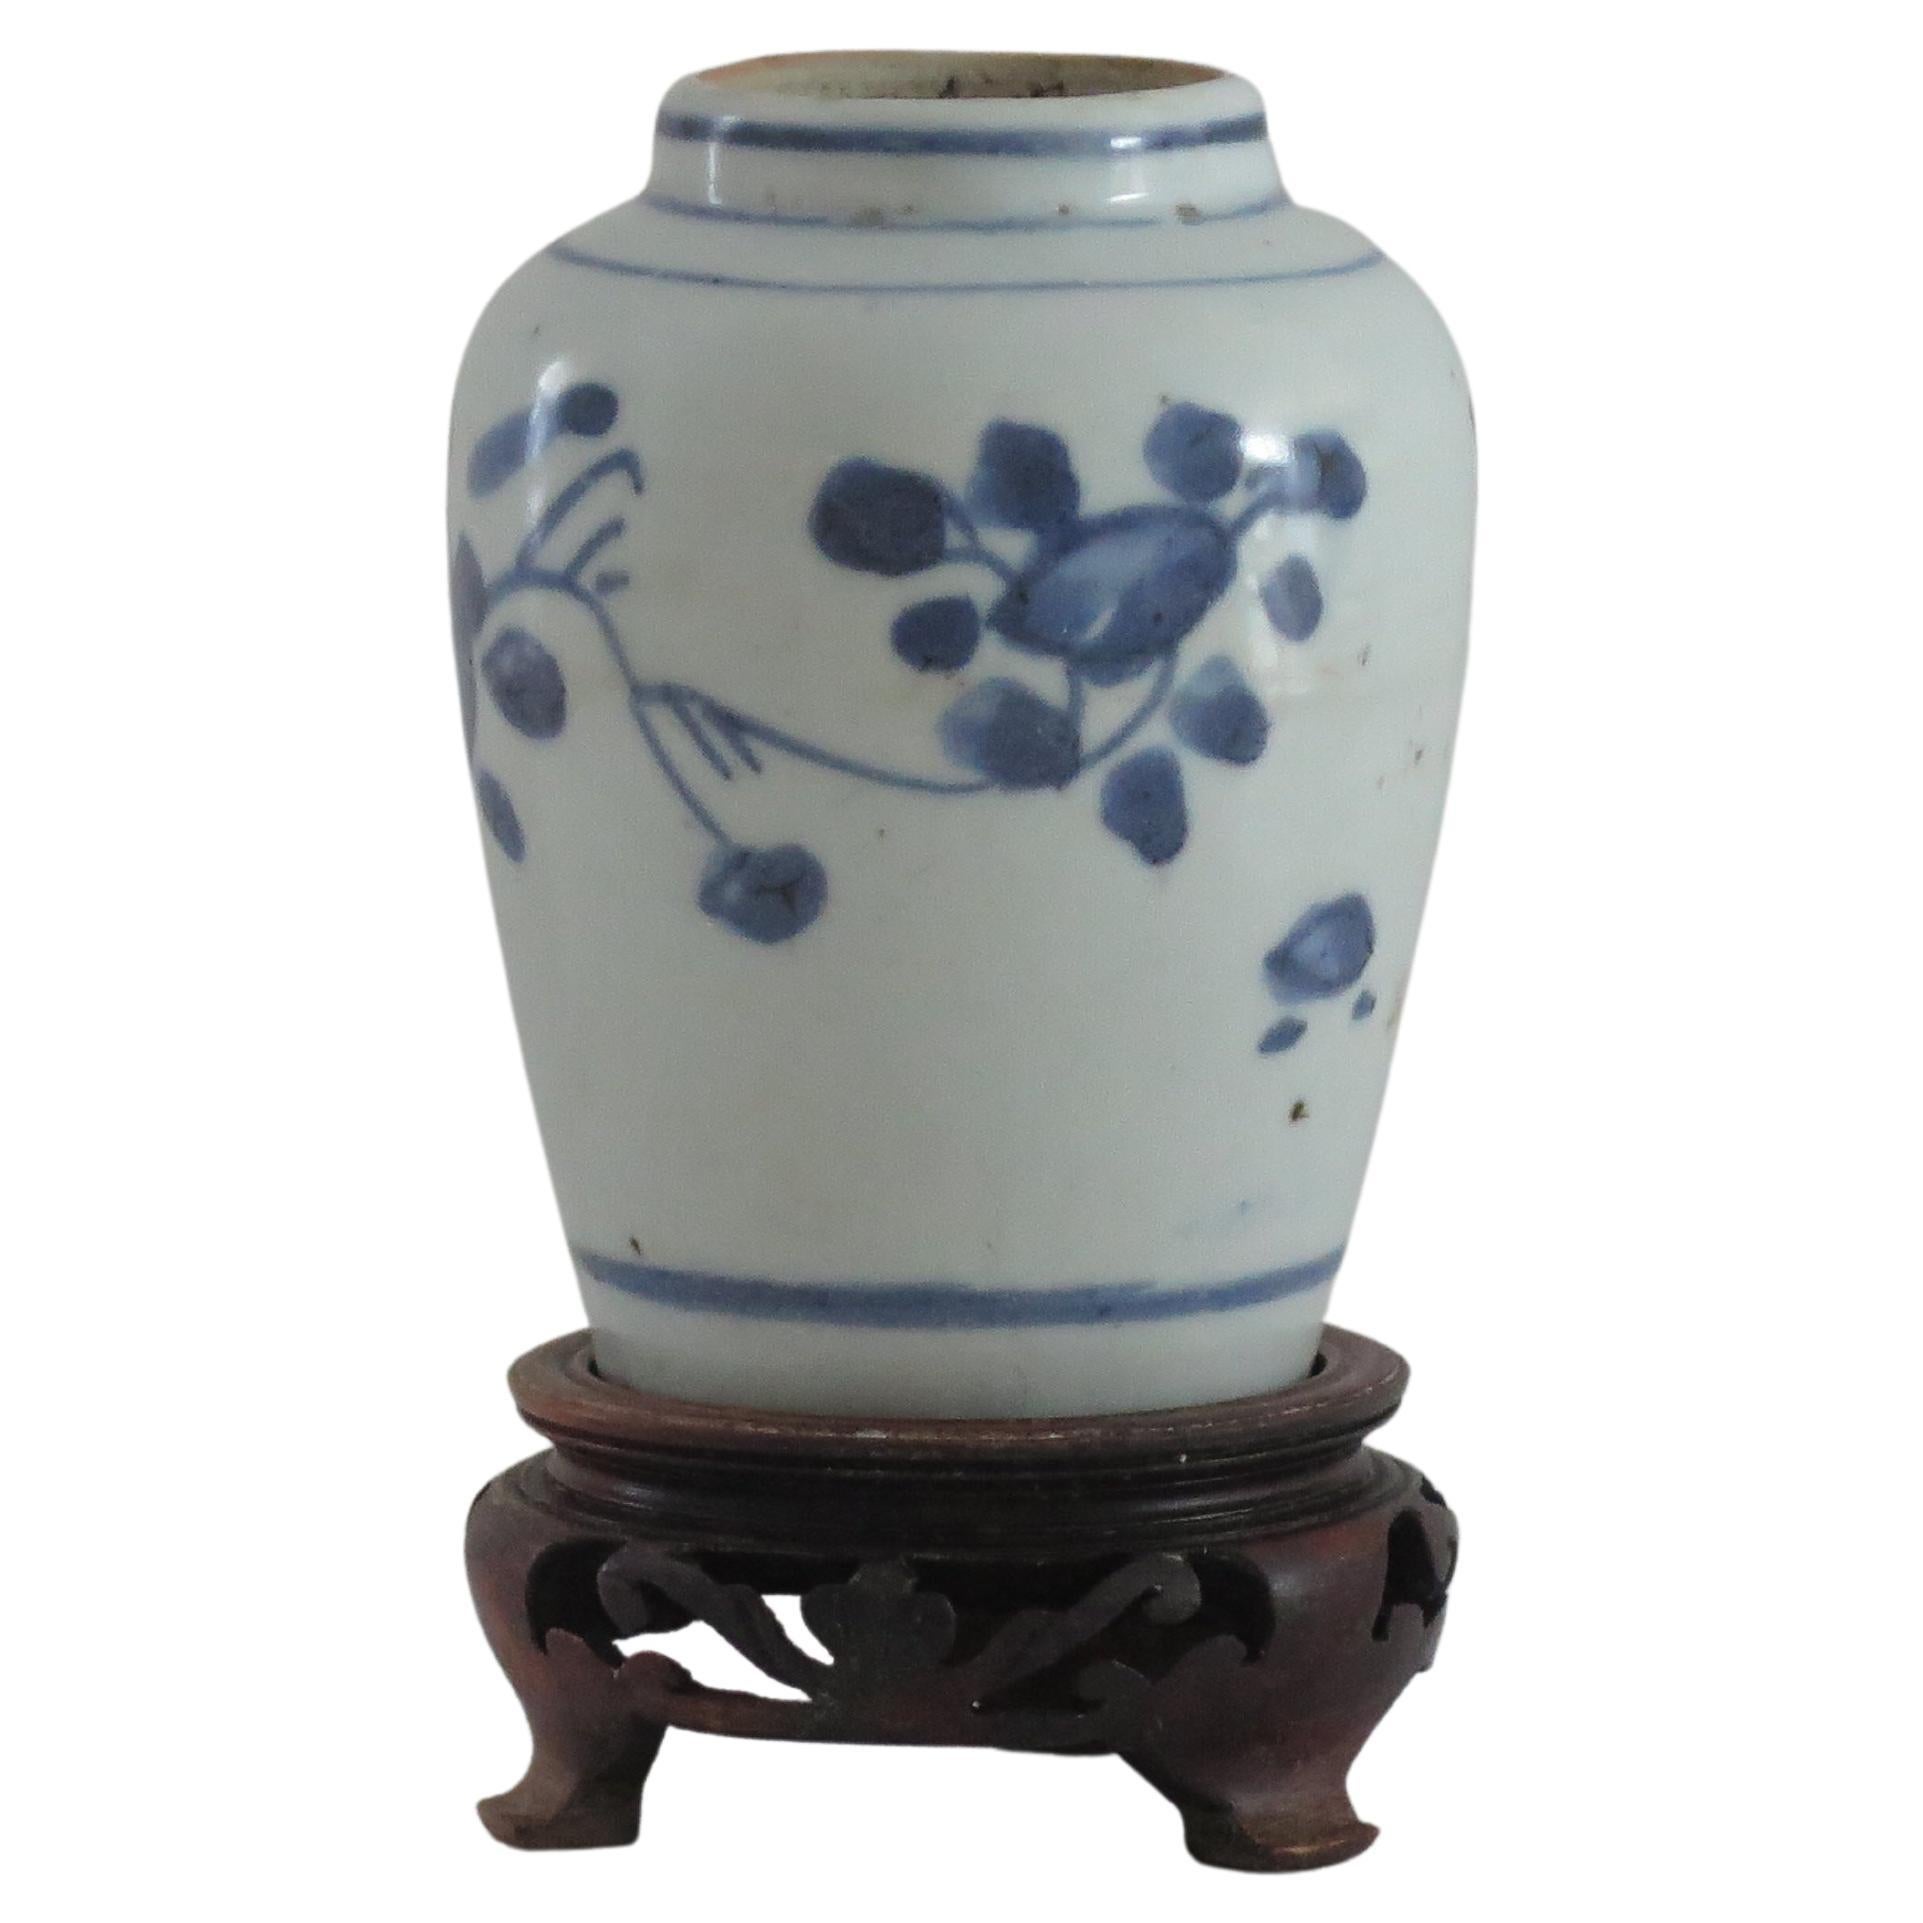 Jarre chinoise Ming du 17e siècle en porcelaine peinte à la main en bleu et blanc avec Stand en bois dur